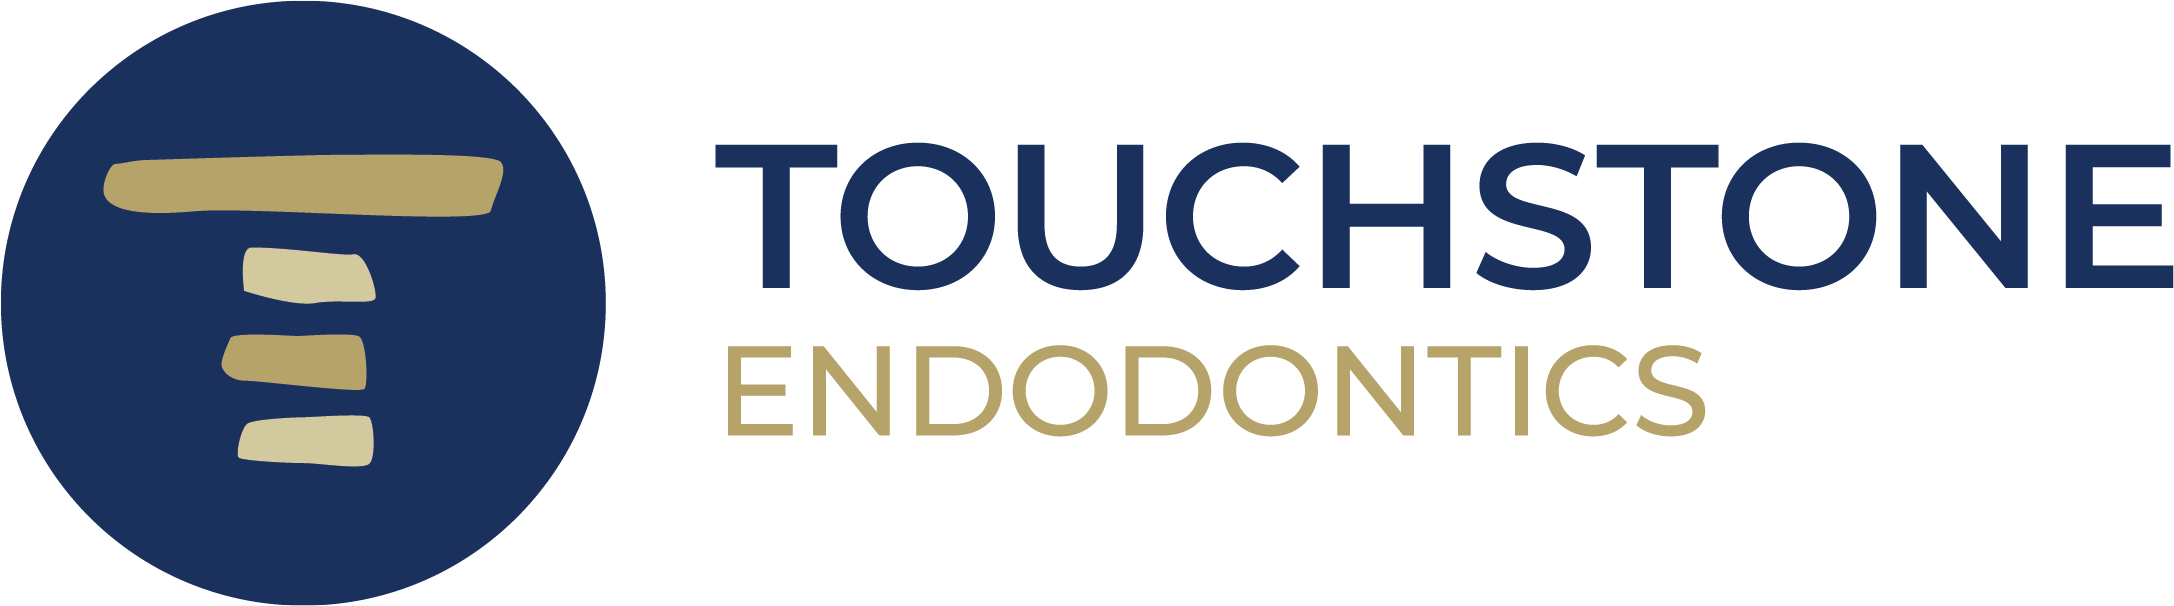 Touchstone Endodontics